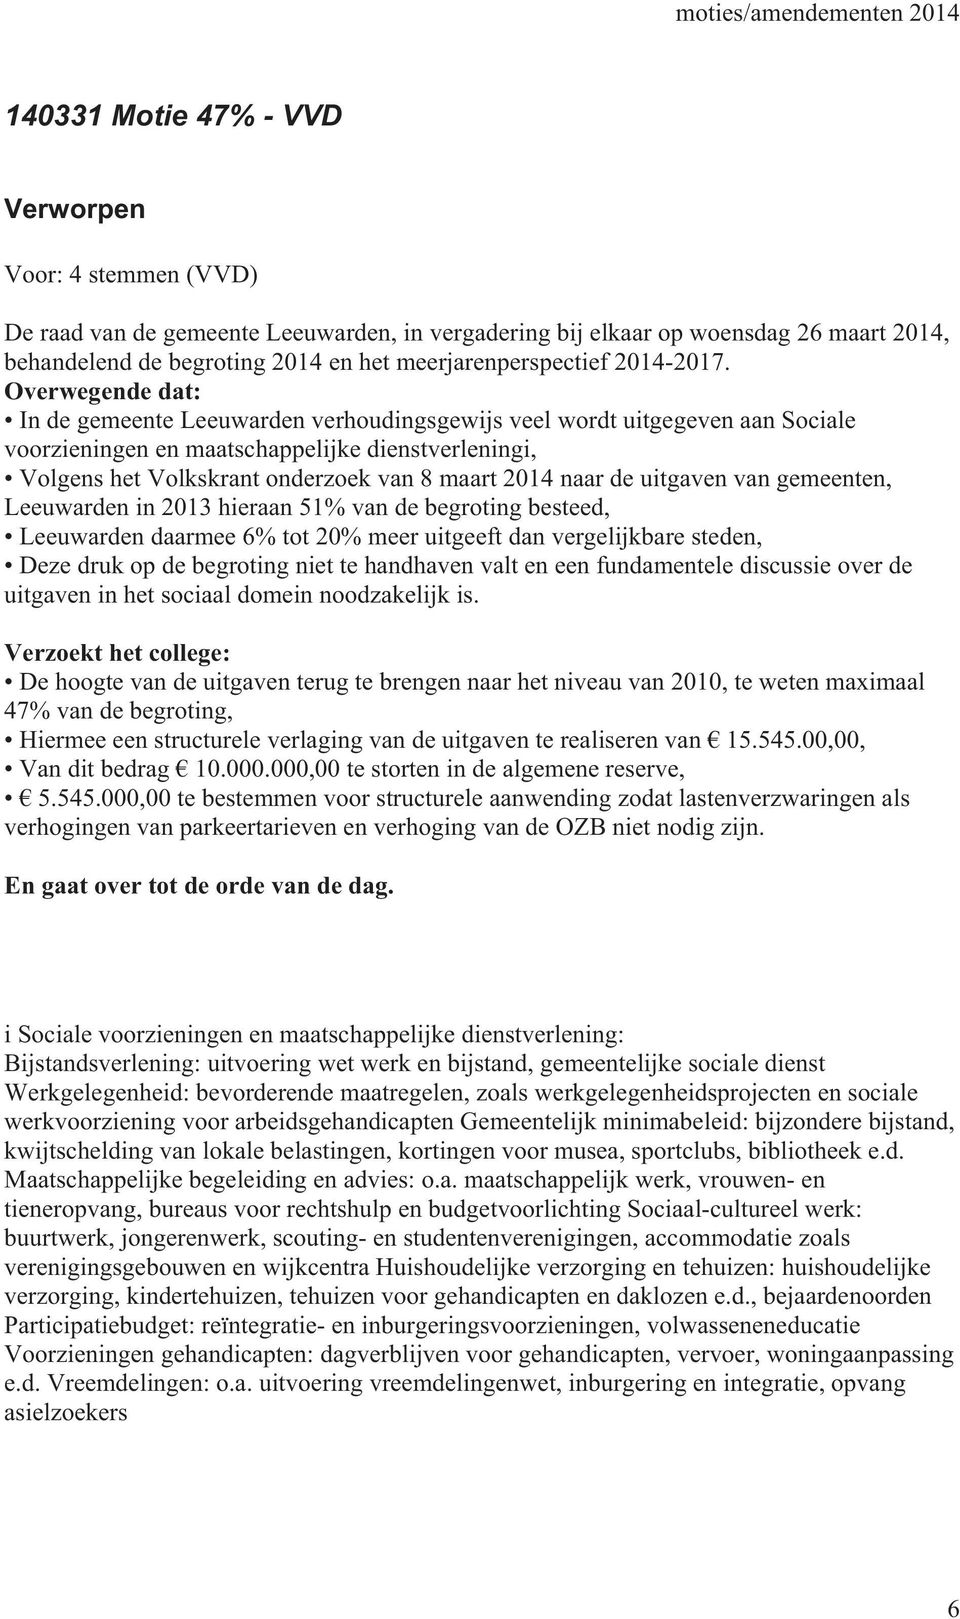 Overwegende dat: In de gemeente Leeuwarden verhoudingsgewijs veel wordt uitgegeven aan Sociale voorzieningen en maatschappelijke dienstverleningi, Volgens het Volkskrant onderzoek van 8 maart 2014